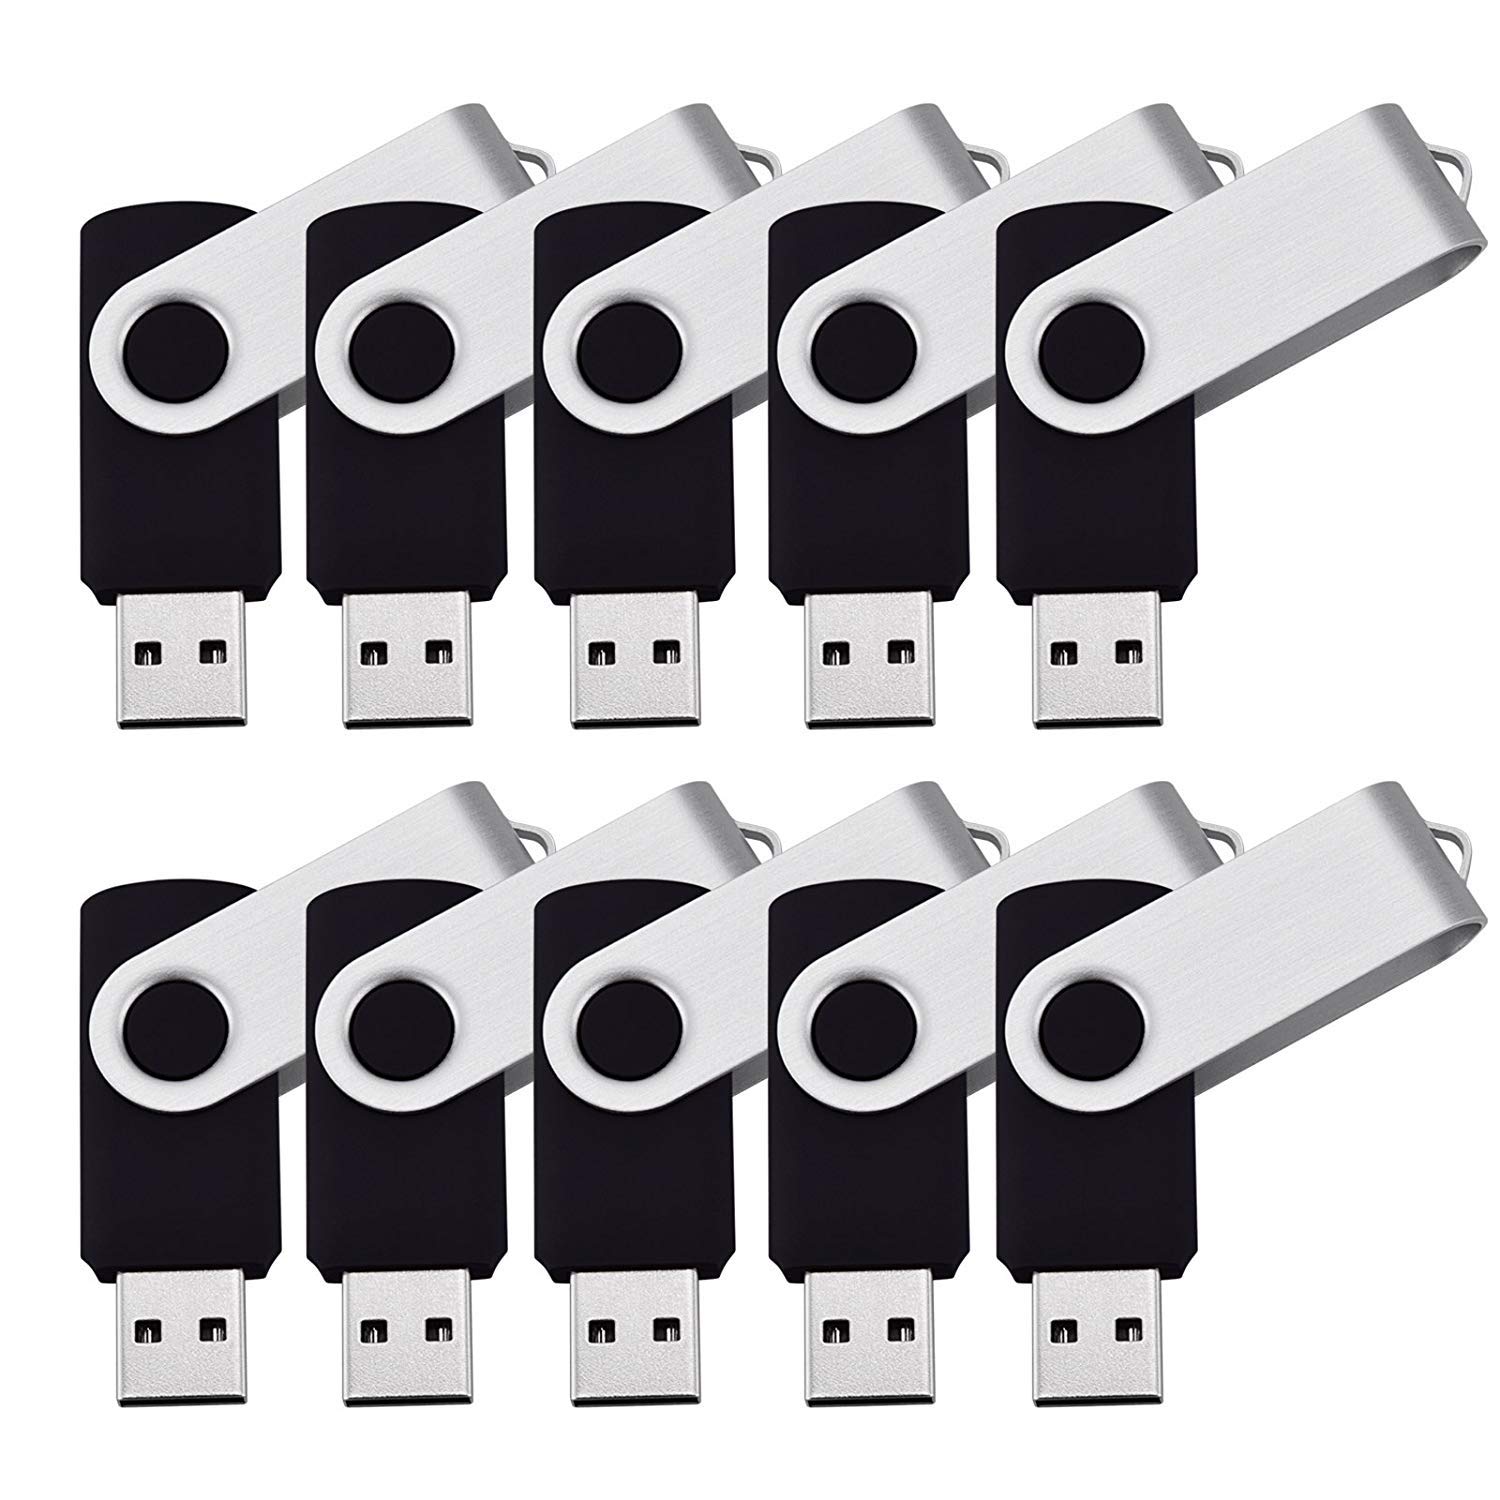 Flash Drive Bulk USB Drives 20pcs 128MB USB Flash Drives Flash Drive Thumb Drive Bulk Flash Drives Swivel USB 2.0 (128MB, 20PCS, Black) (128MB*20pcs)